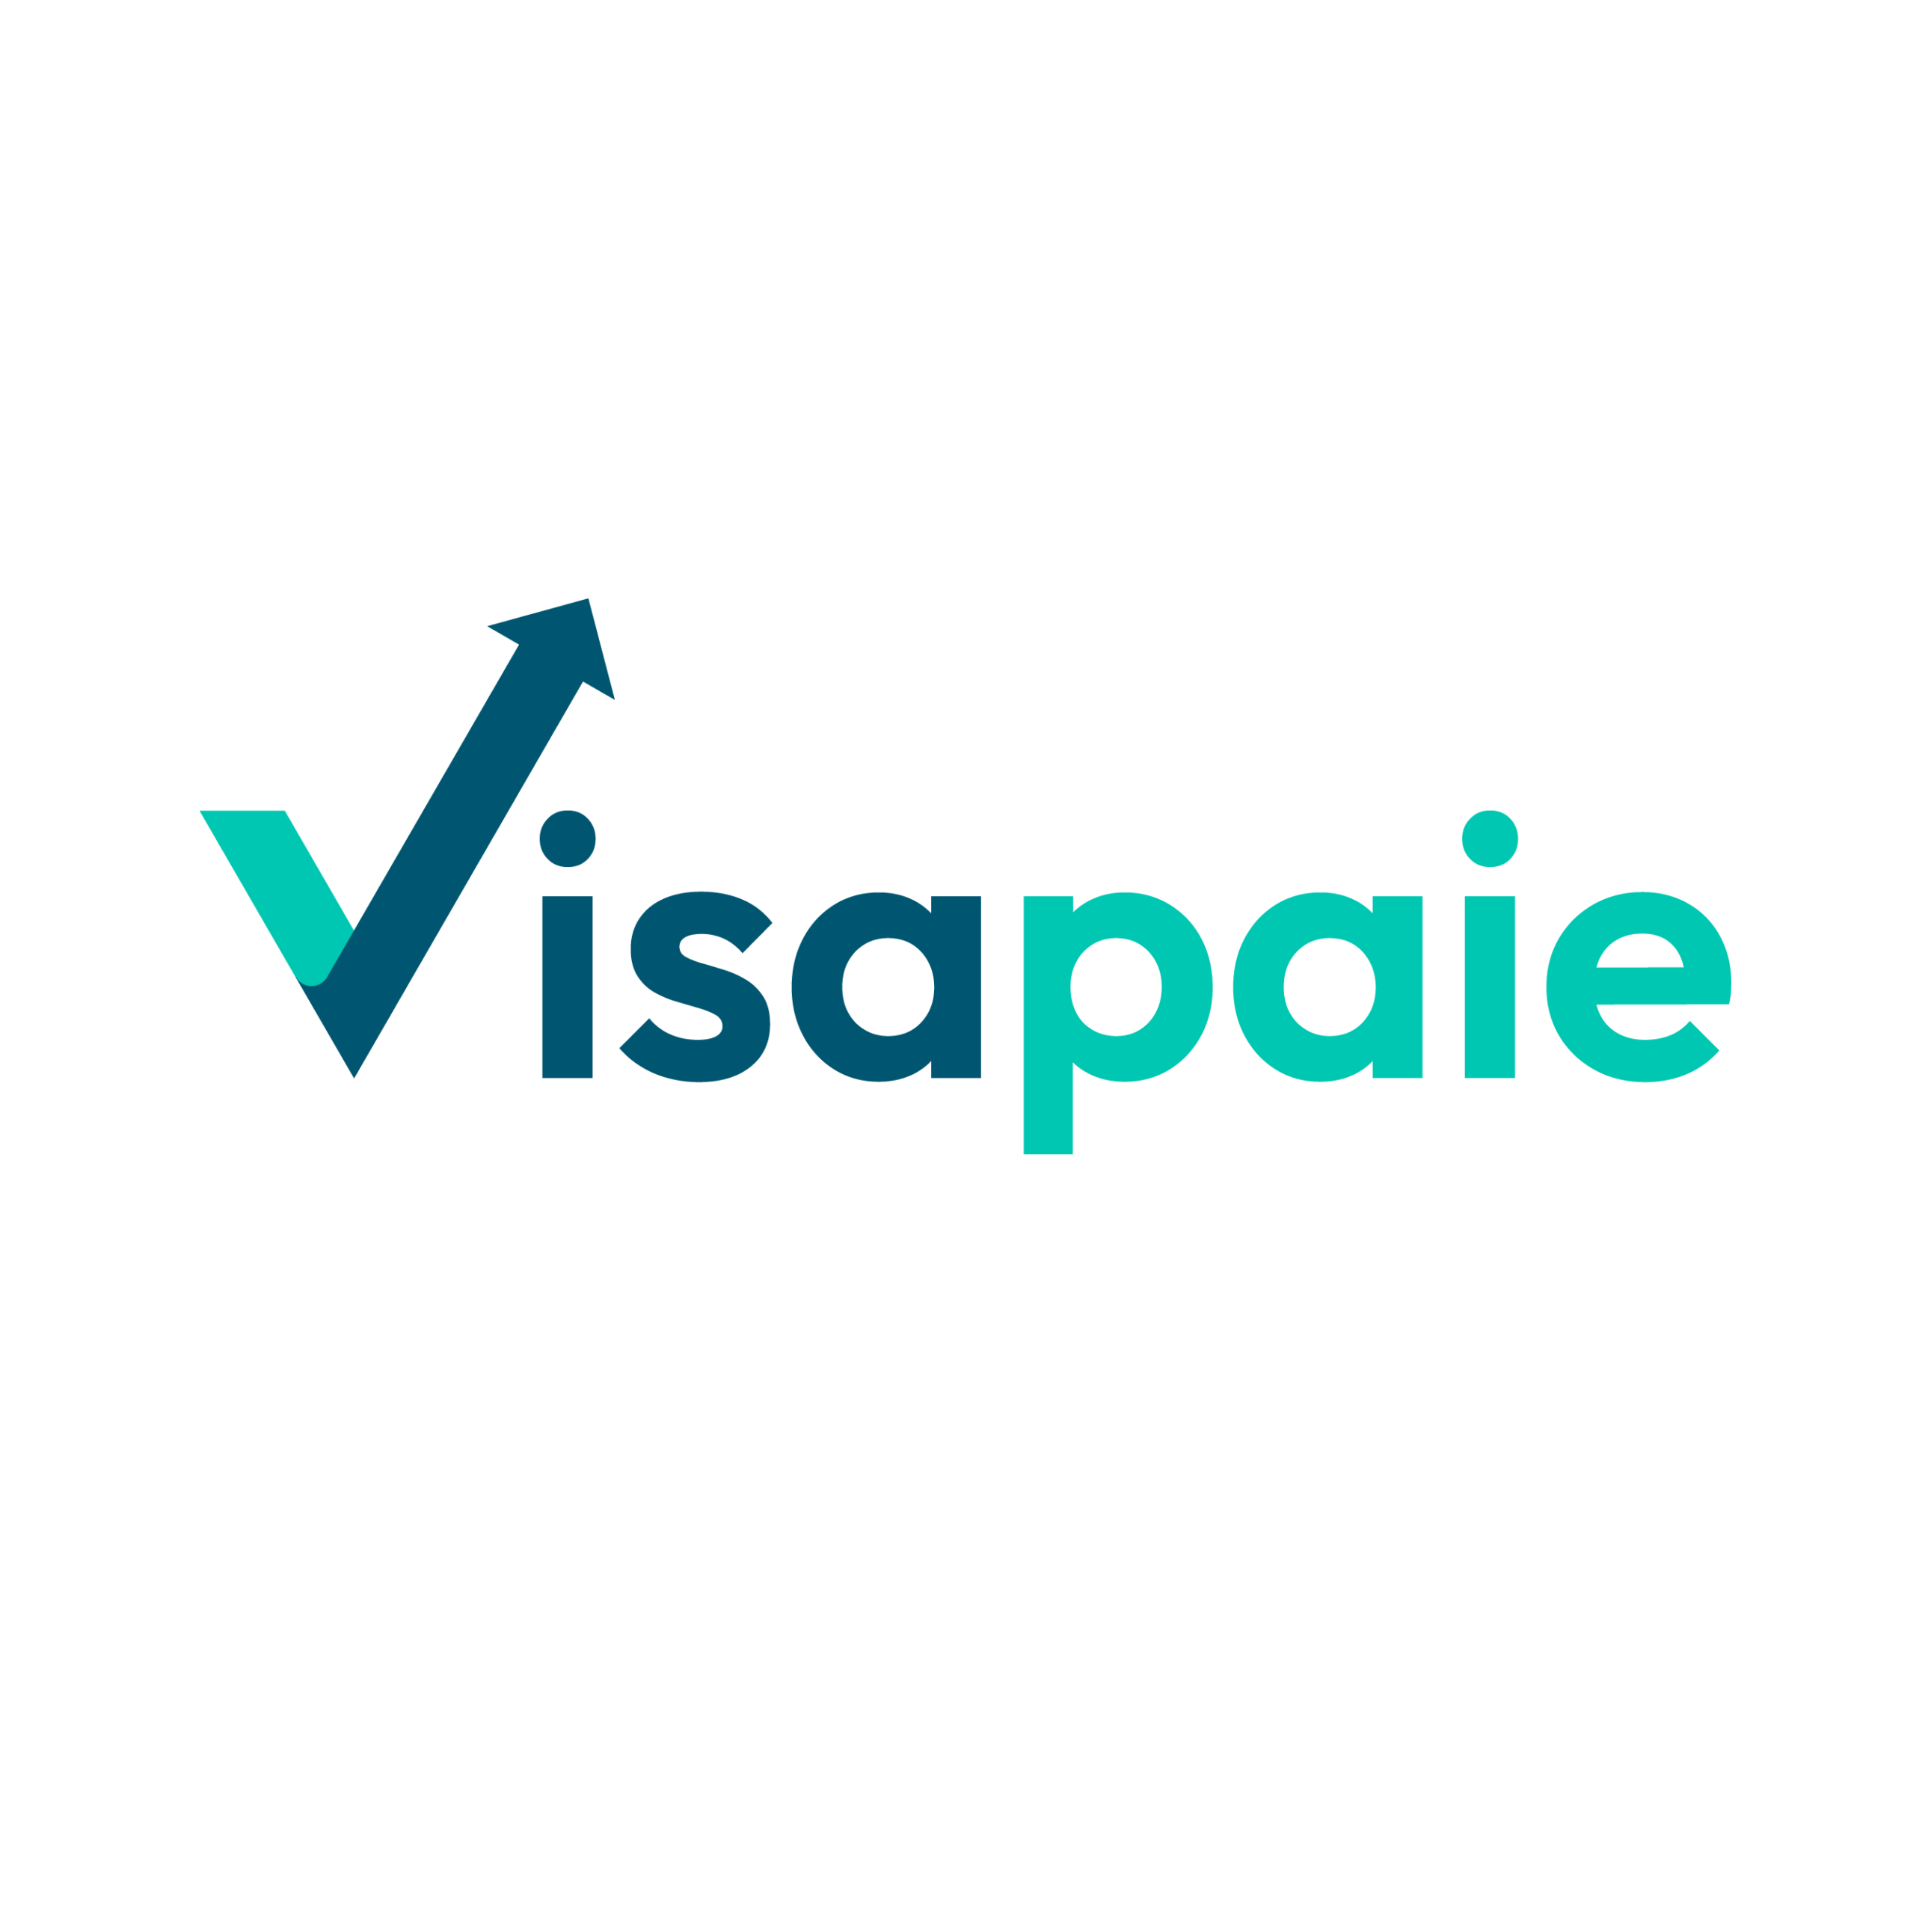 visapaie-logo-2048x744